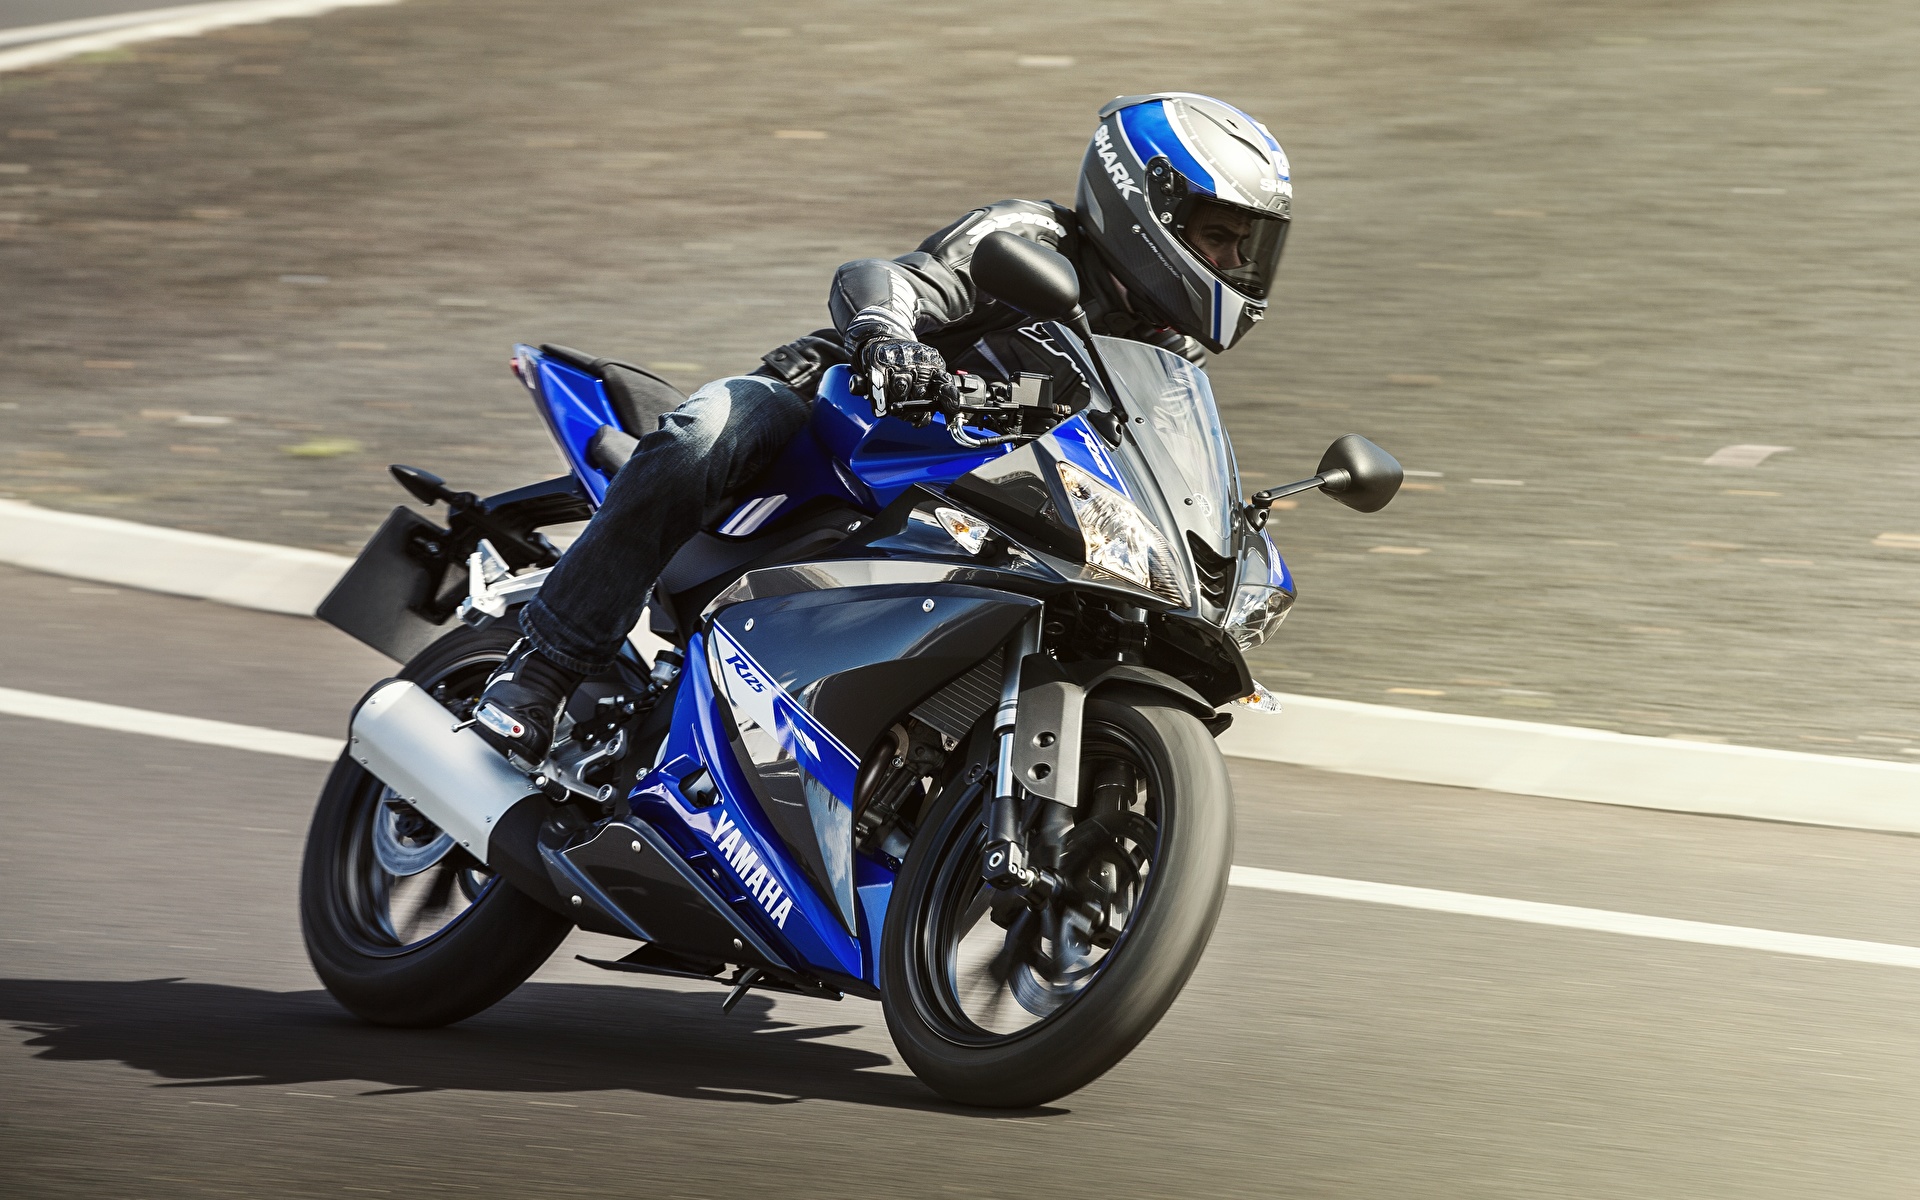 Bilder von Yamaha Helm 2014-17 YZF-R125 Motorrad Bewegung Motorradfahrer 1920x1200 Motorräder fährt fahren fahrendes Geschwindigkeit